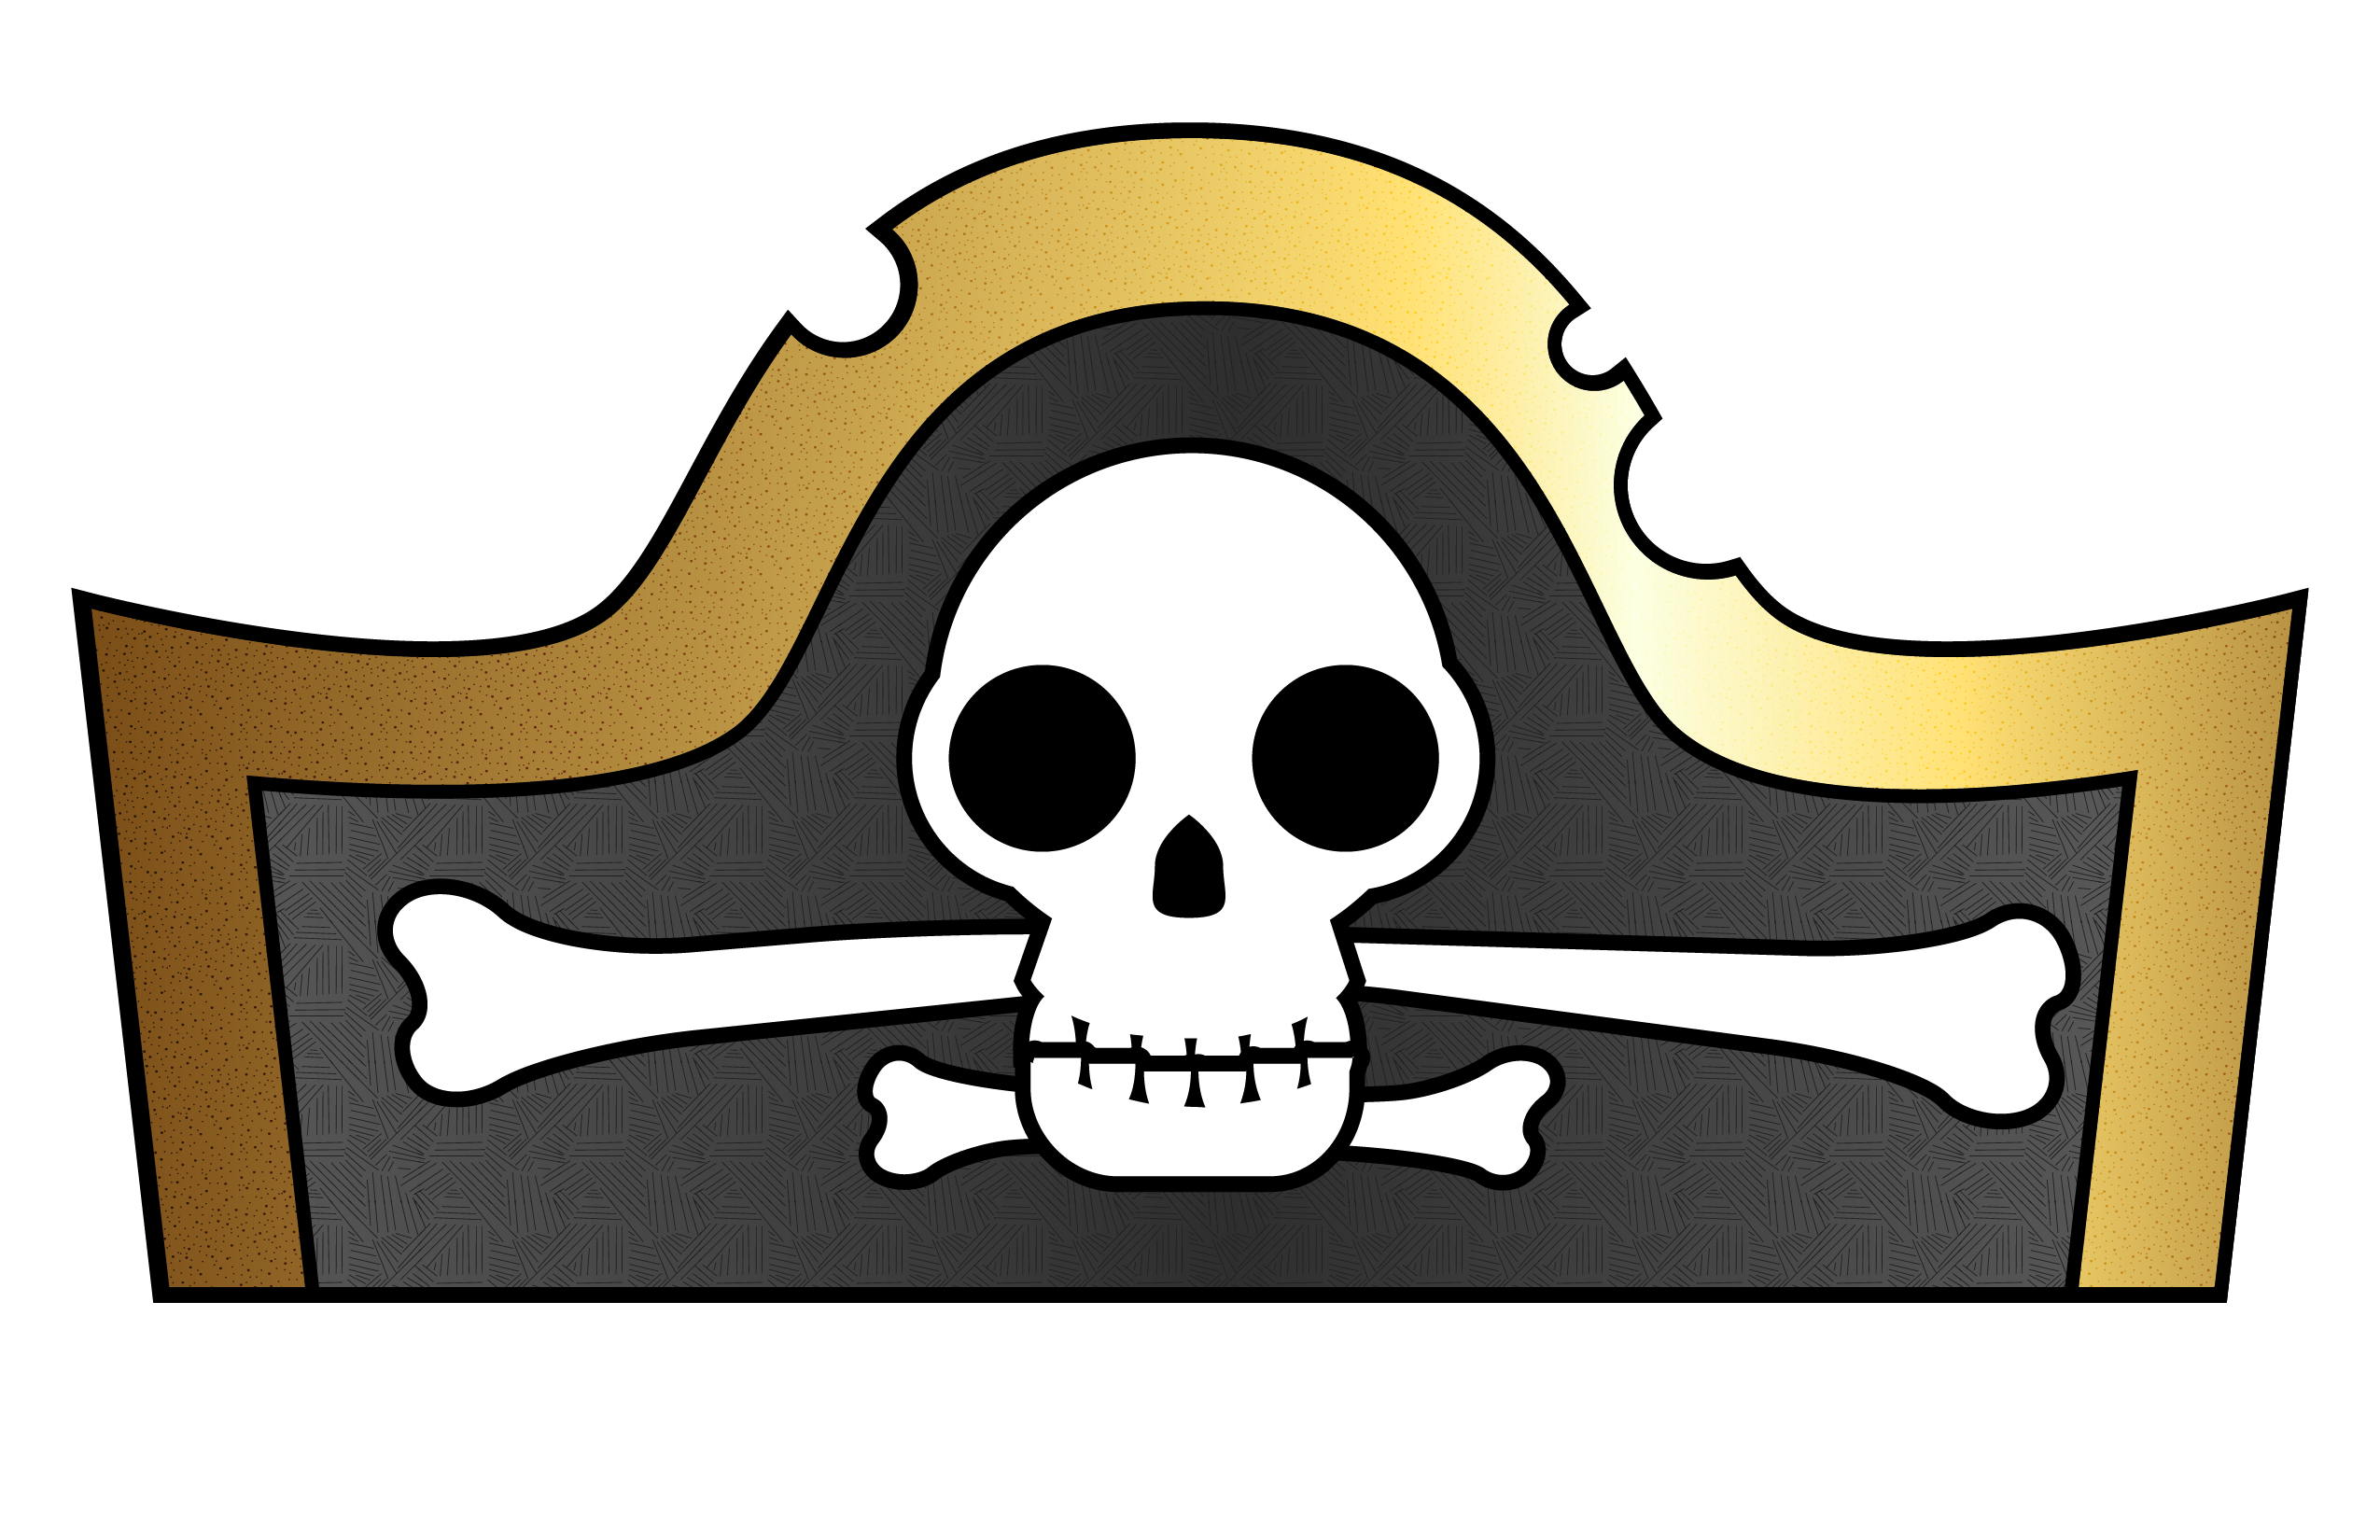 Пиратская шляпа. Пиратские атрибуты. Пиратские картинки. Пиратские картинки для детей. Пиратская ж